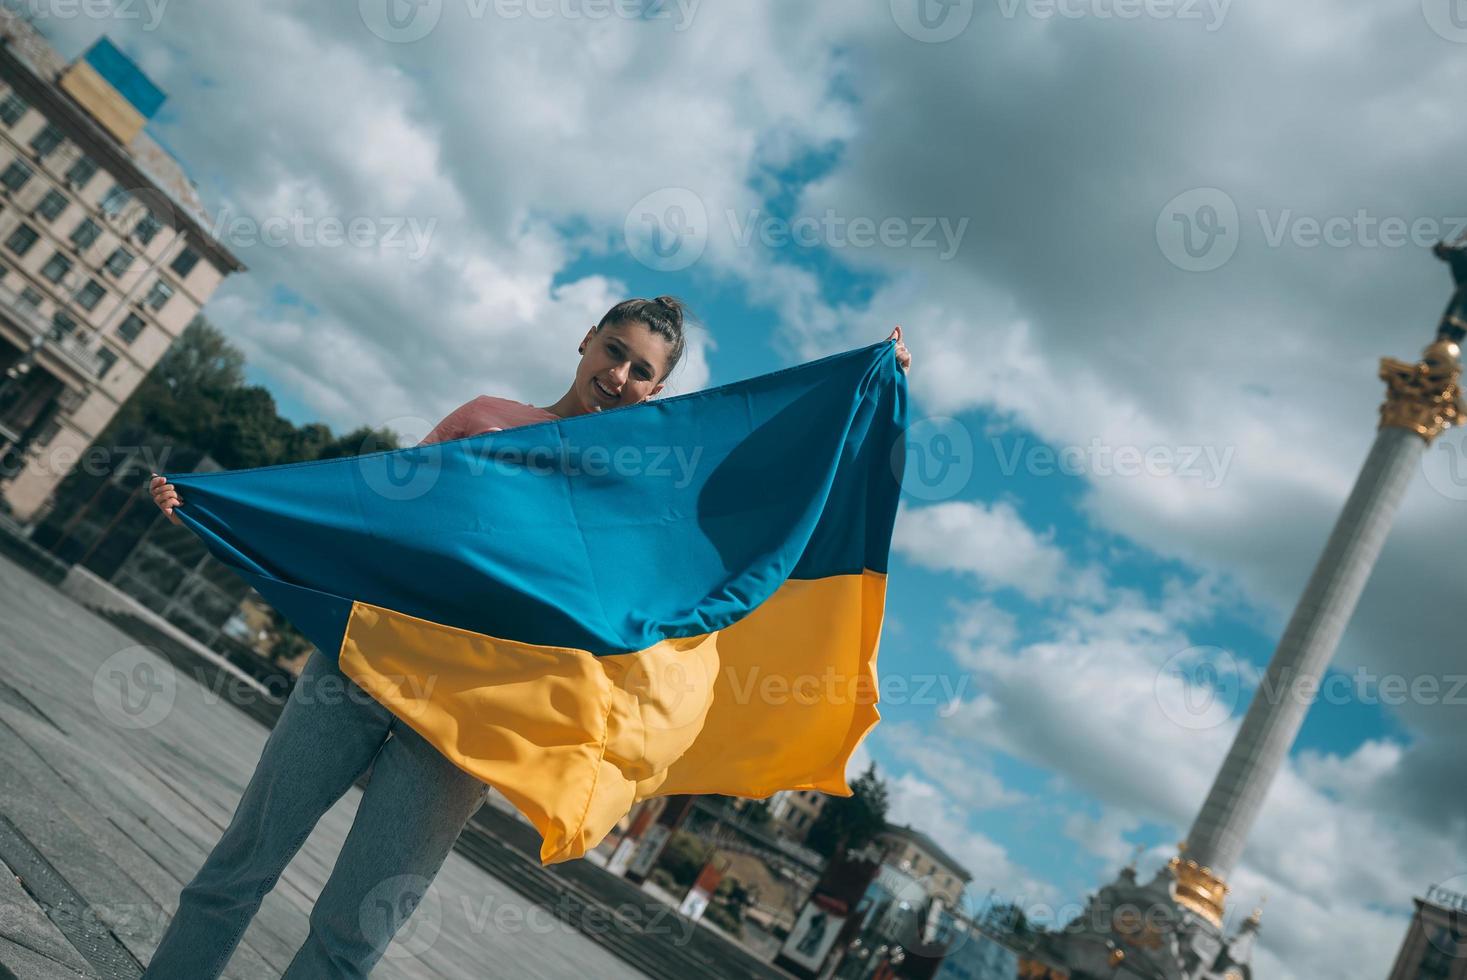 jovem com bandeira nacional da ucrânia na rua foto